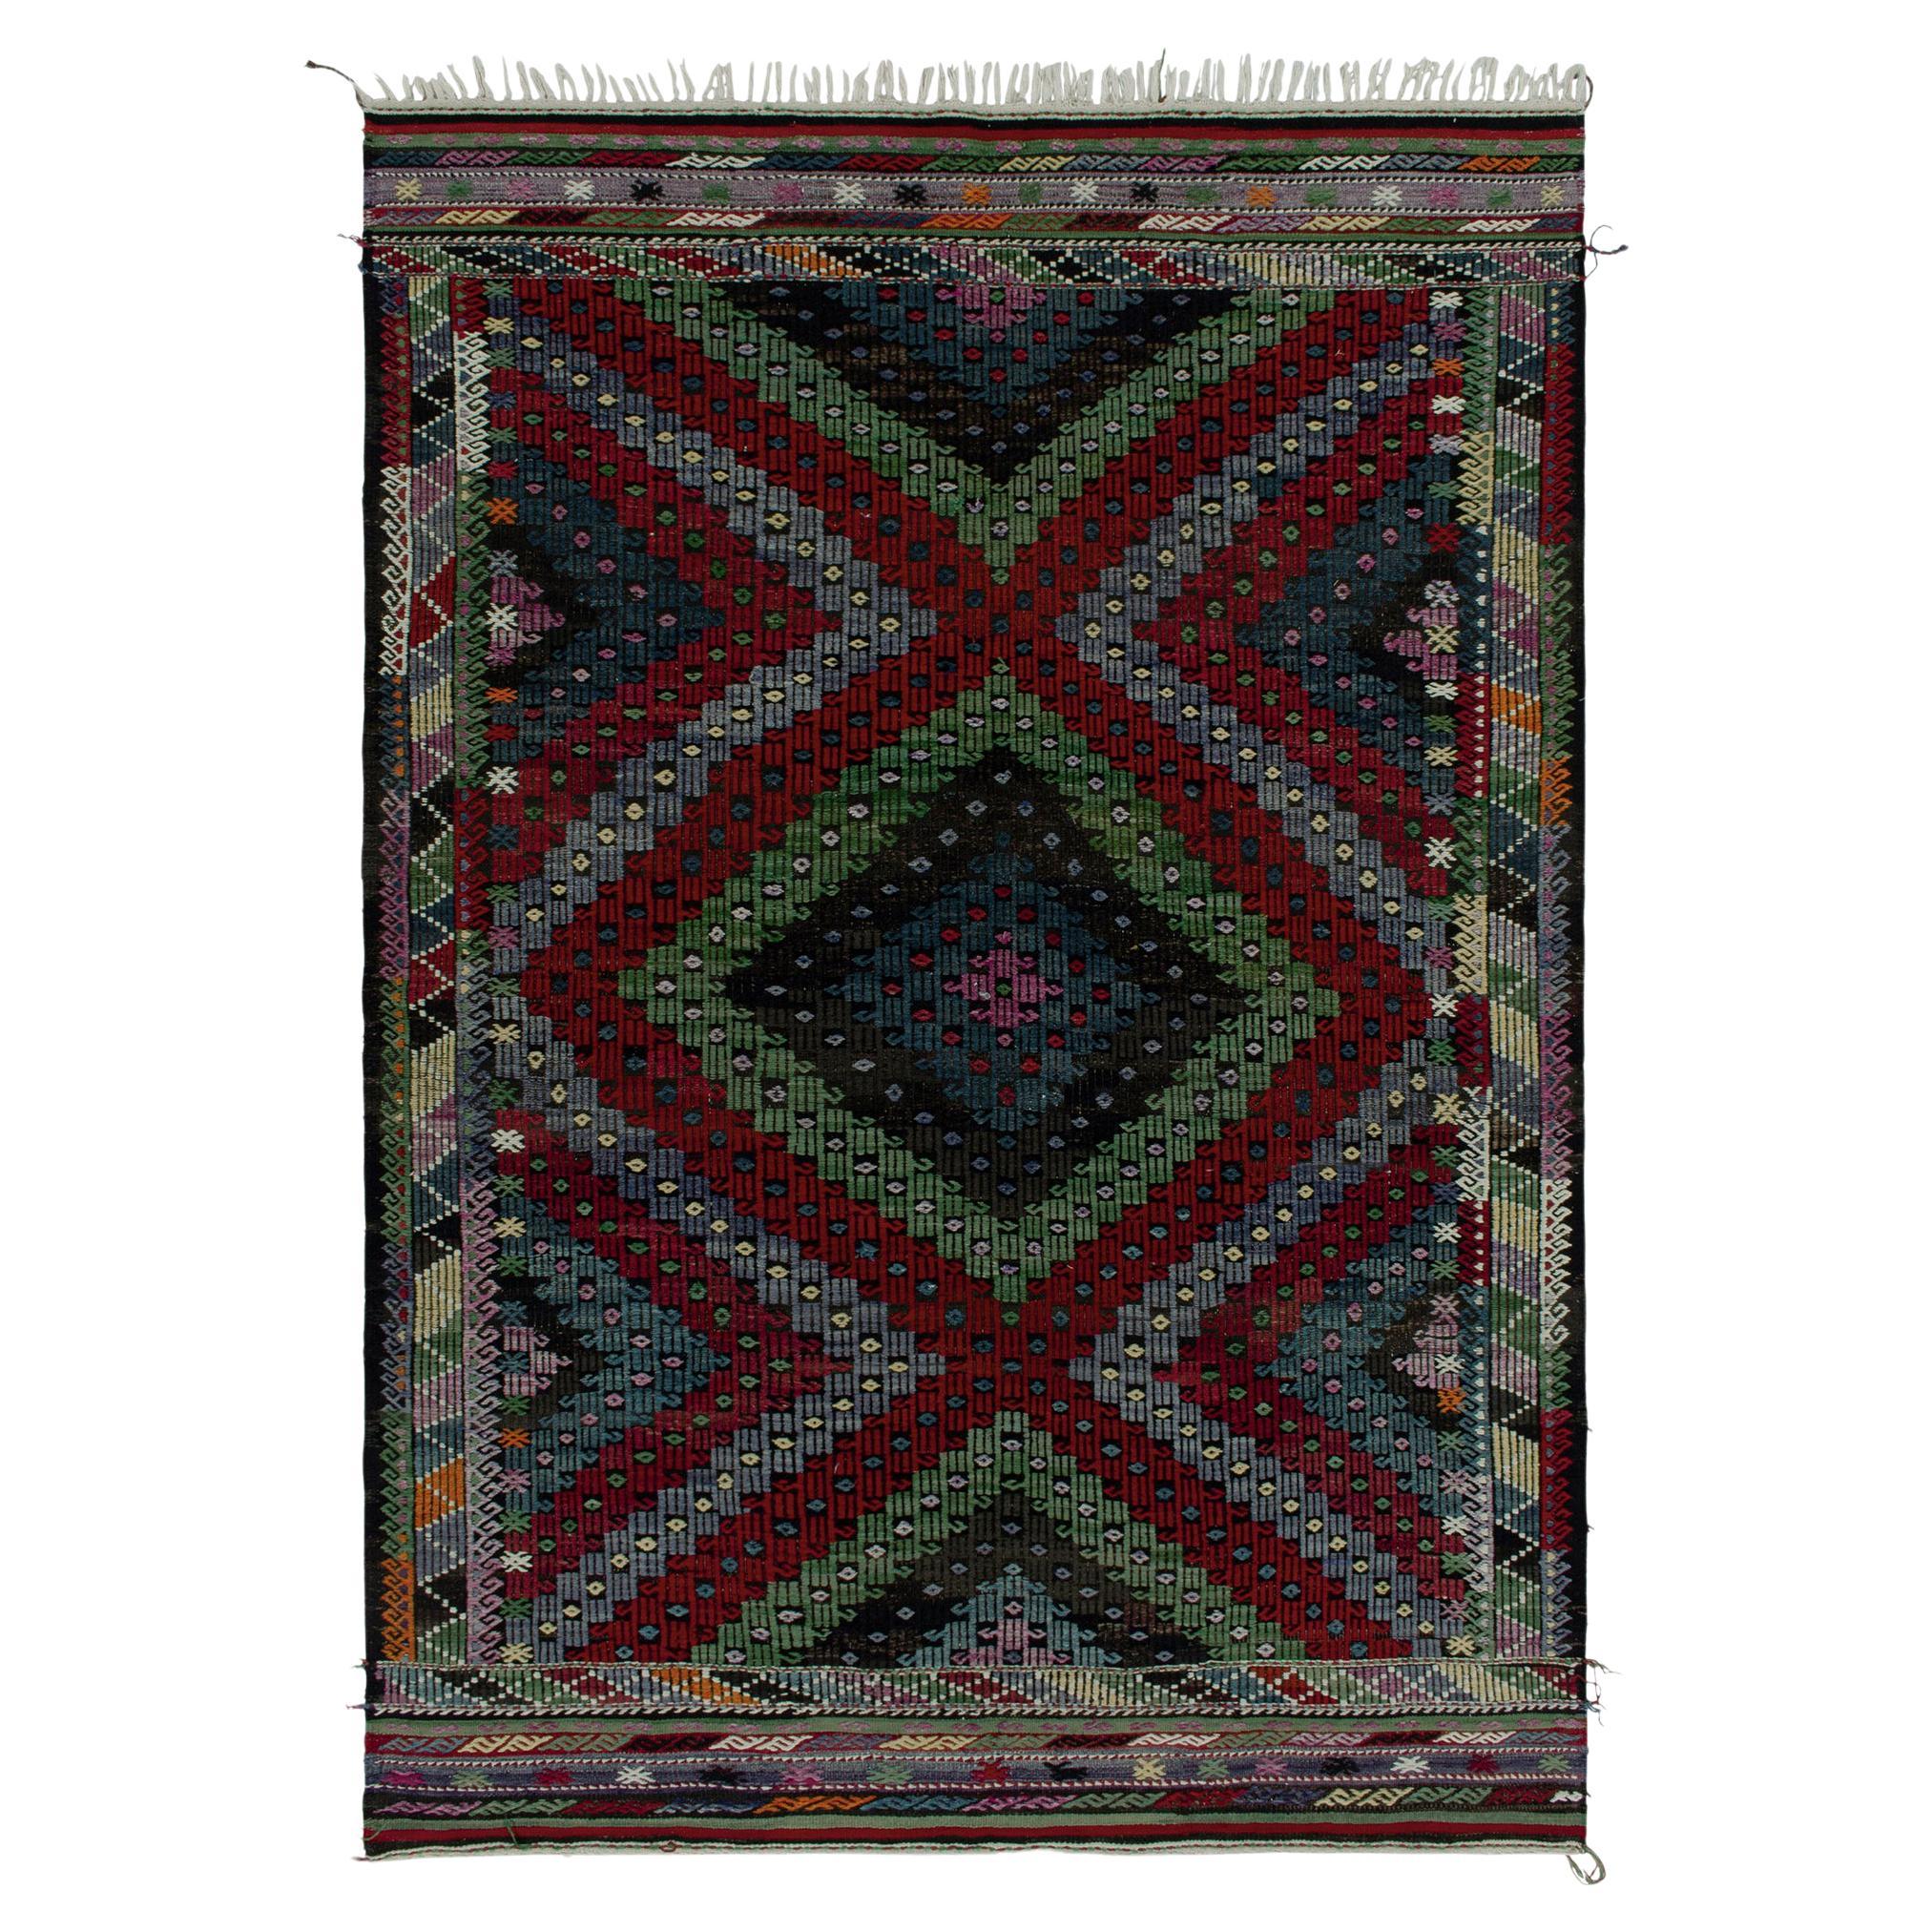 Teppich & Kelim im Vintage-Stil, mehrfarbig bestickte geometrische Muster, Stammeskunst